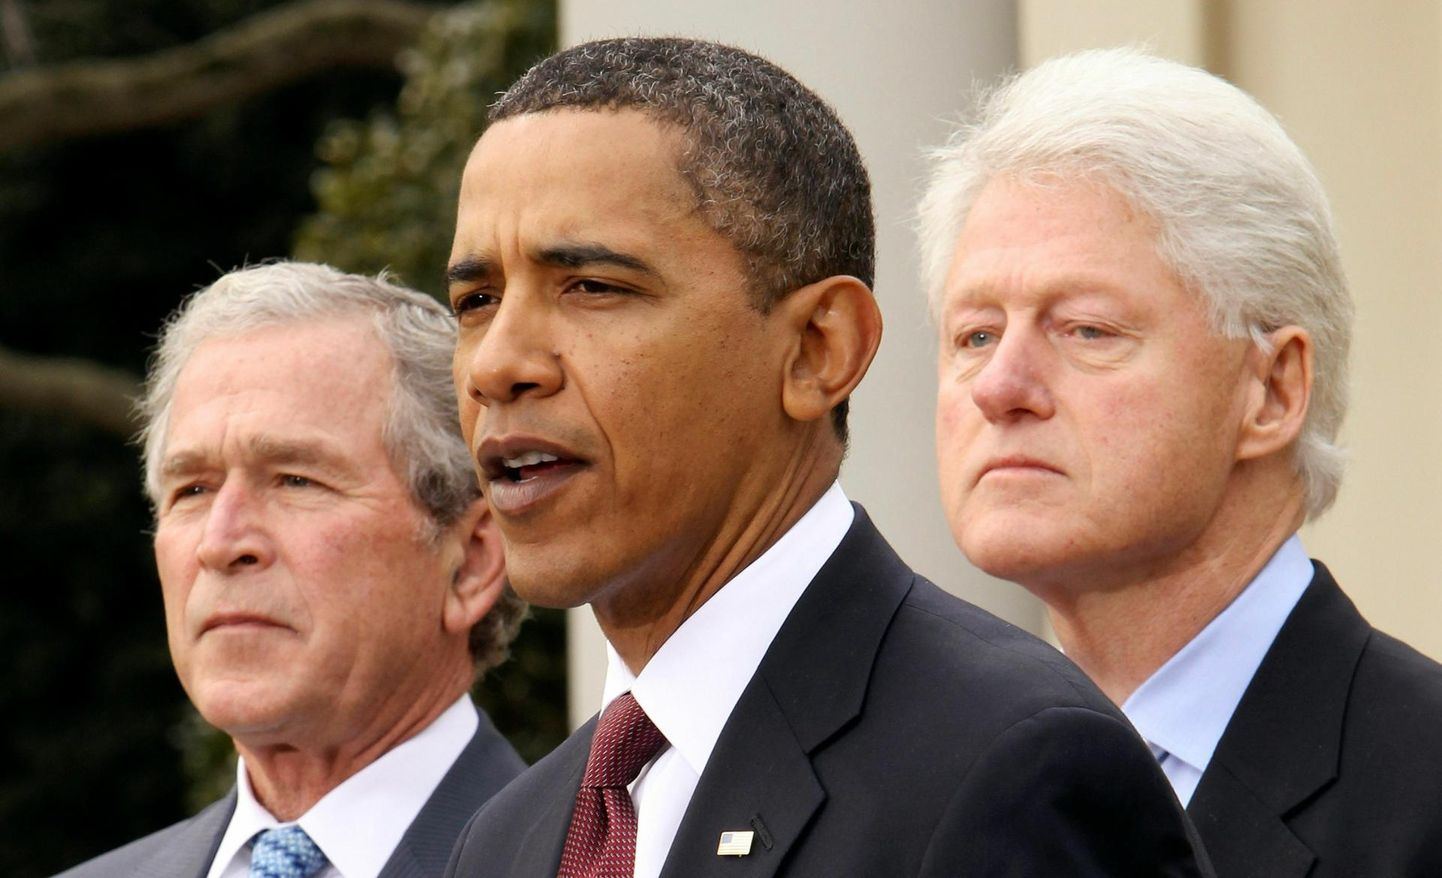 Mustanahaline demokraadist president Barack Obama (keskel) oli vabariiklasest kauboile George W. Bushile (vasakul) päris heaks visuaalseks vahelduseks, aga selle žesti varjus tsementeerus süsteem edasi ja viha kuhjus. Paremal ekspresident Bill Clinton.